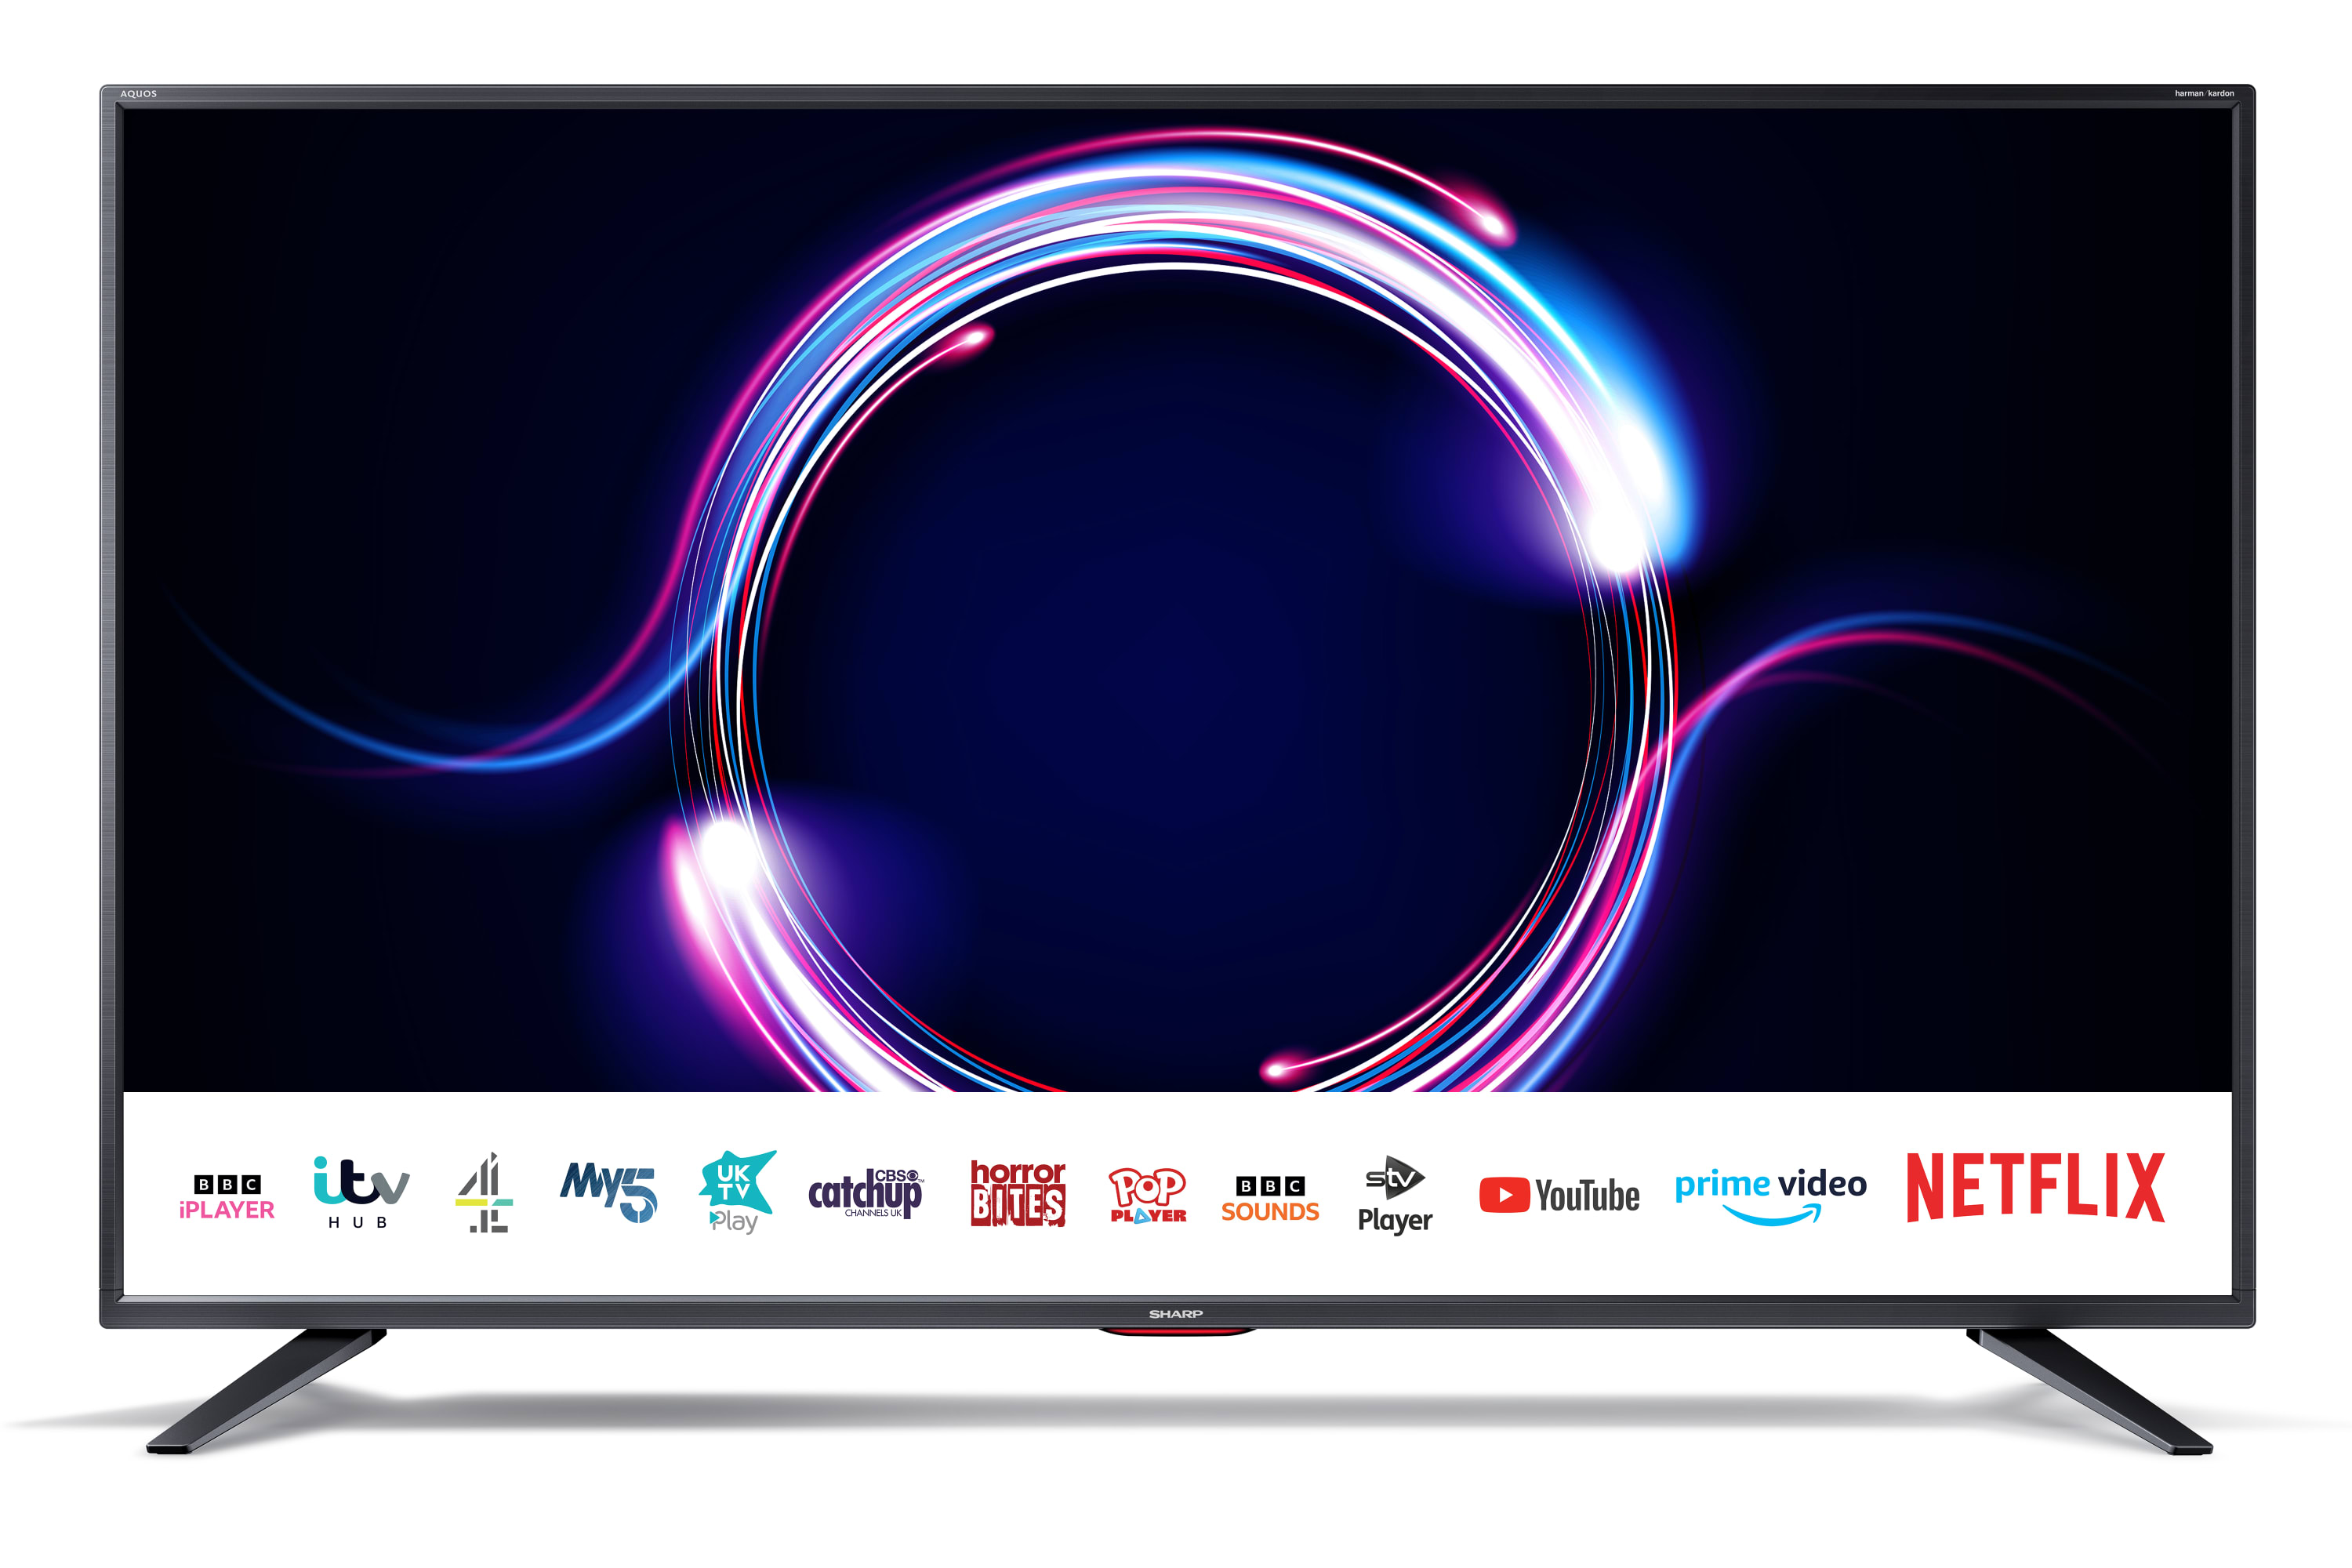 Smart TV 4K UHD - 55" 4K ULTRA HD SMART TV